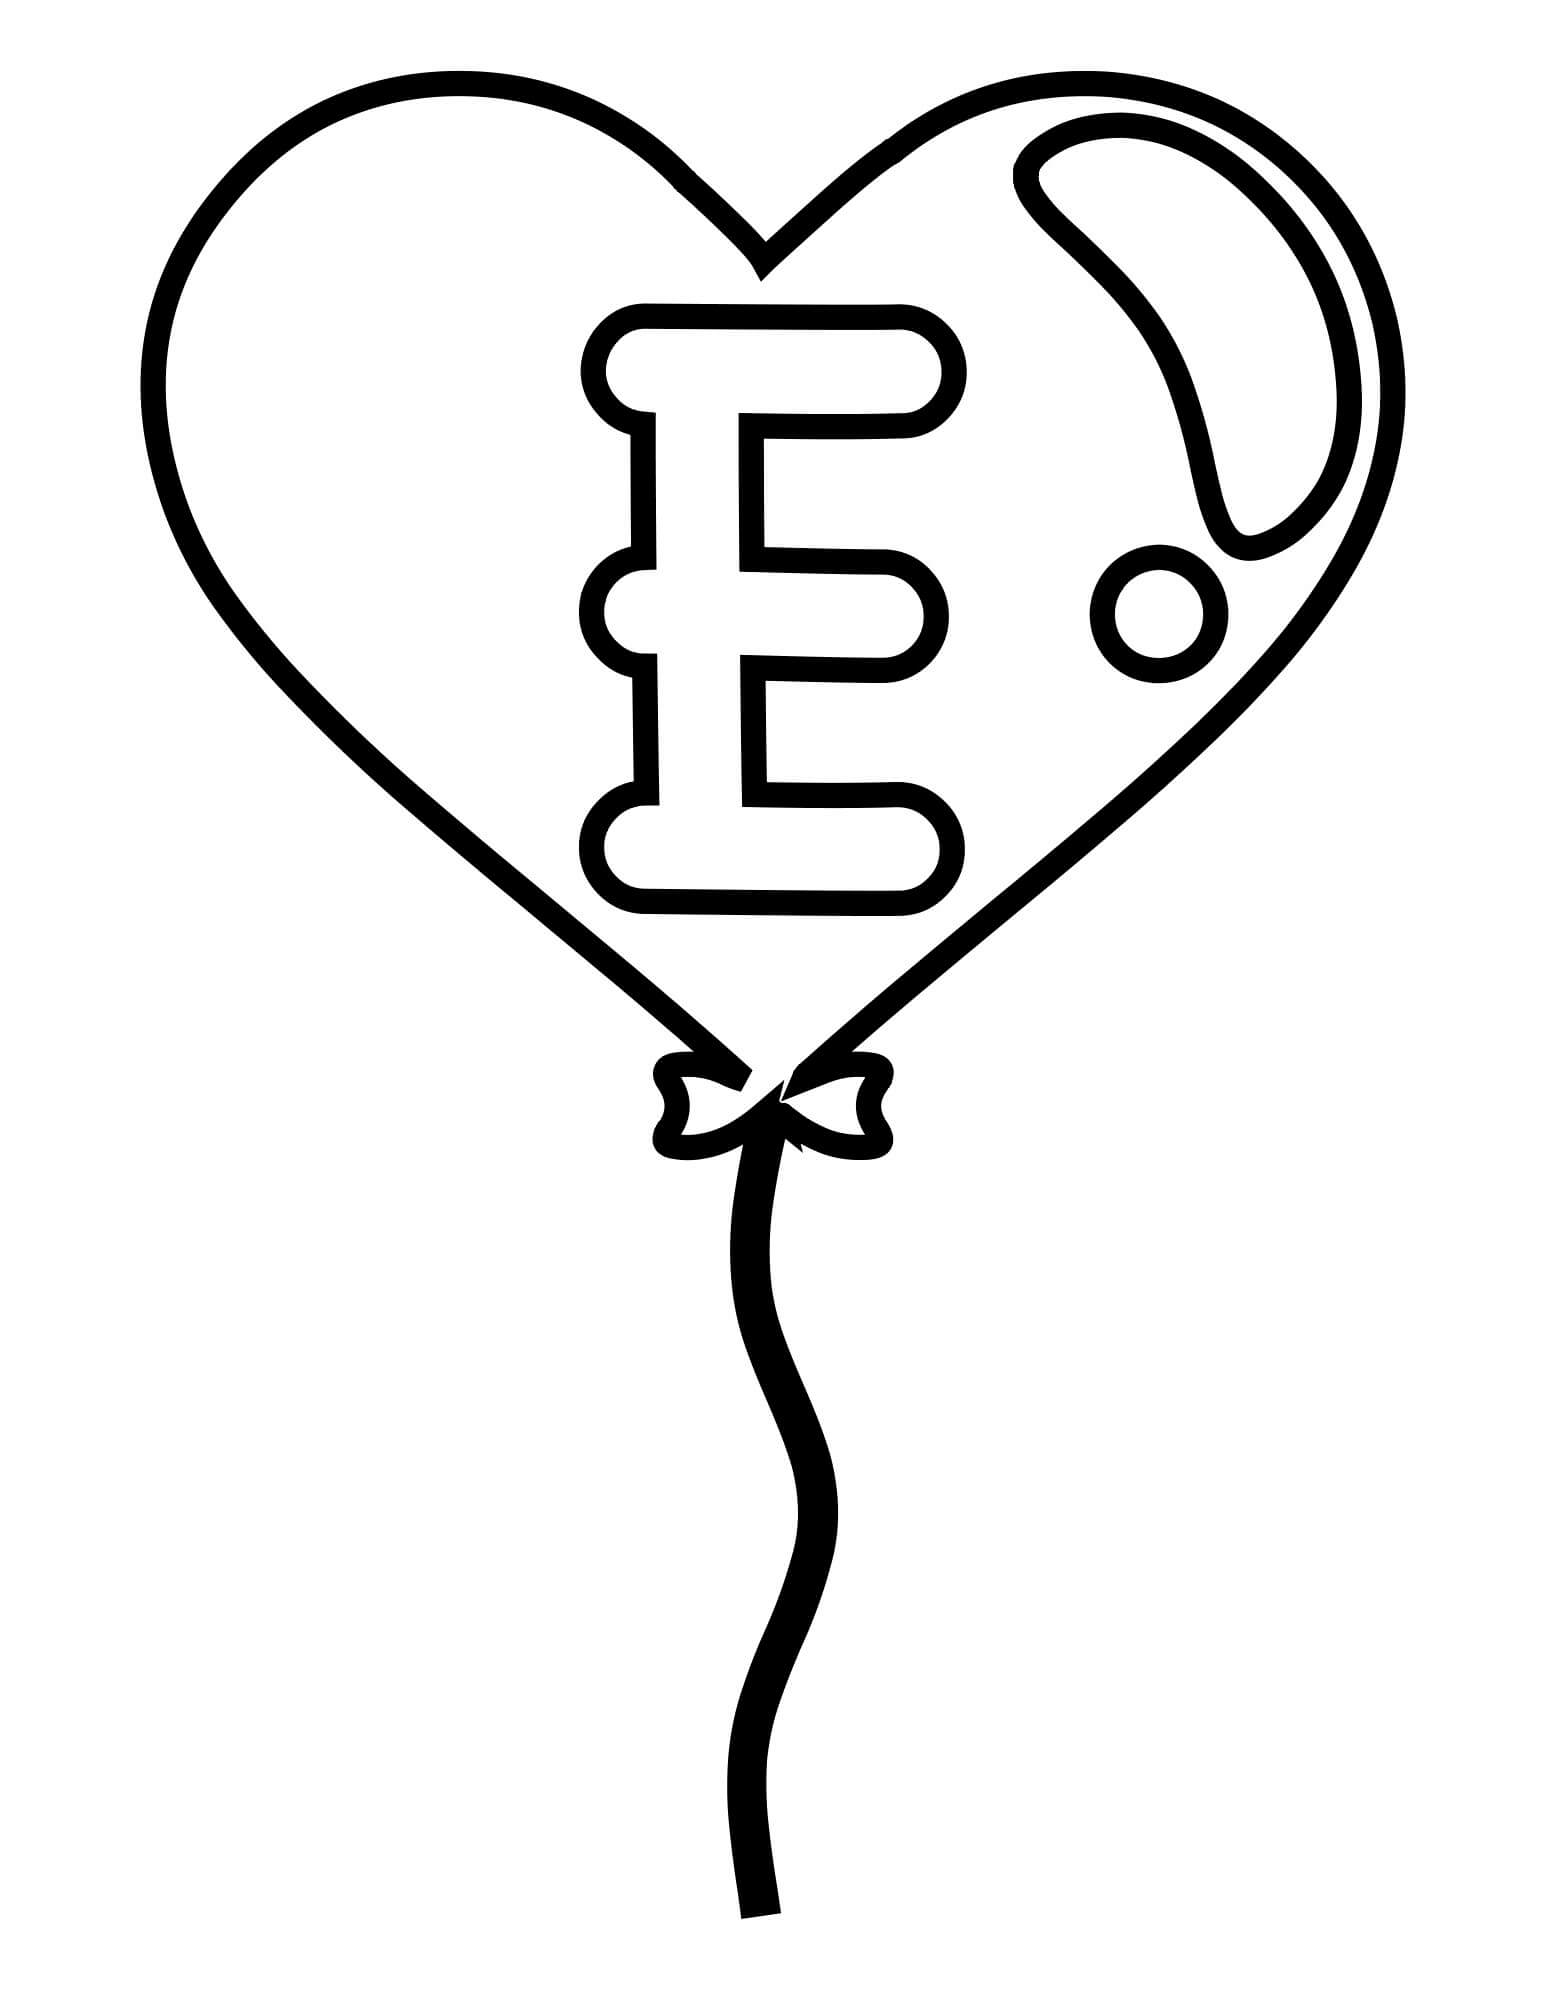 Letra E Fácil no Balão de Coração para colorir